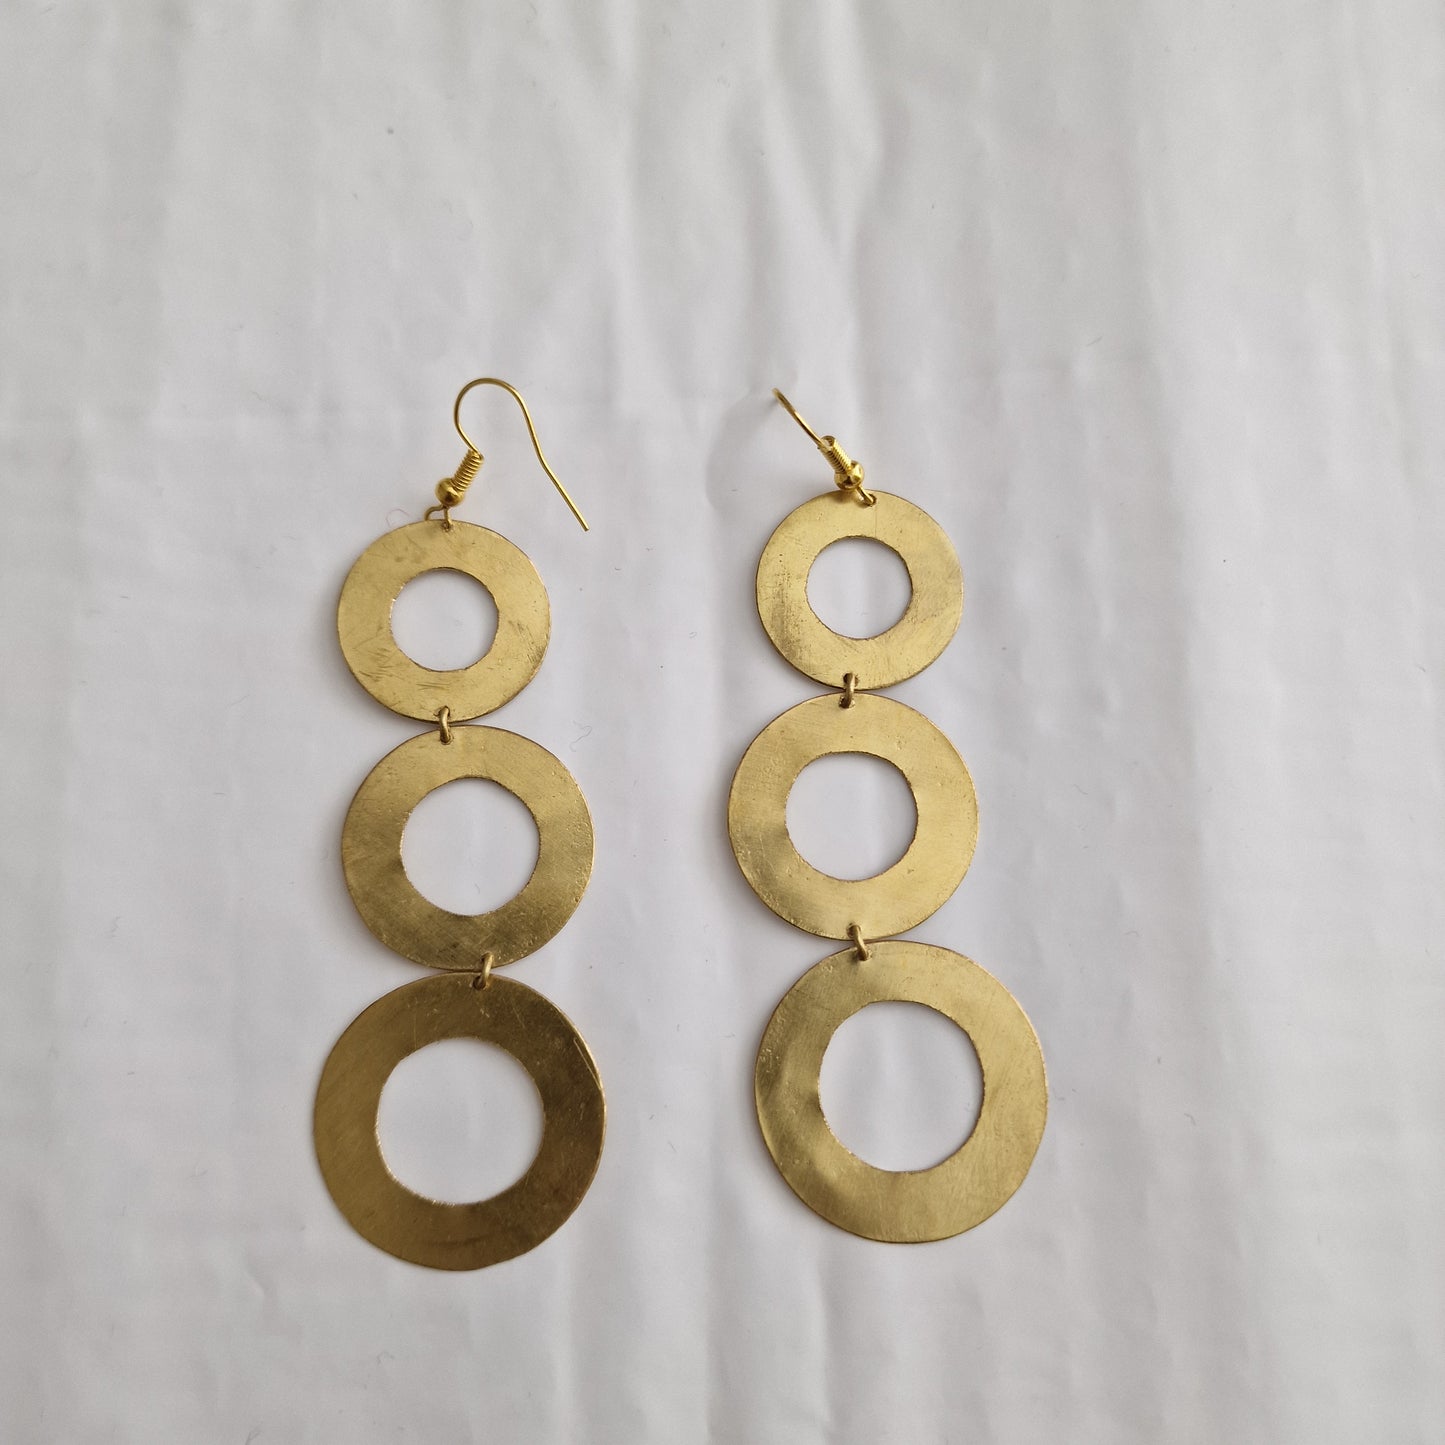 Circular geometric pendant earrings